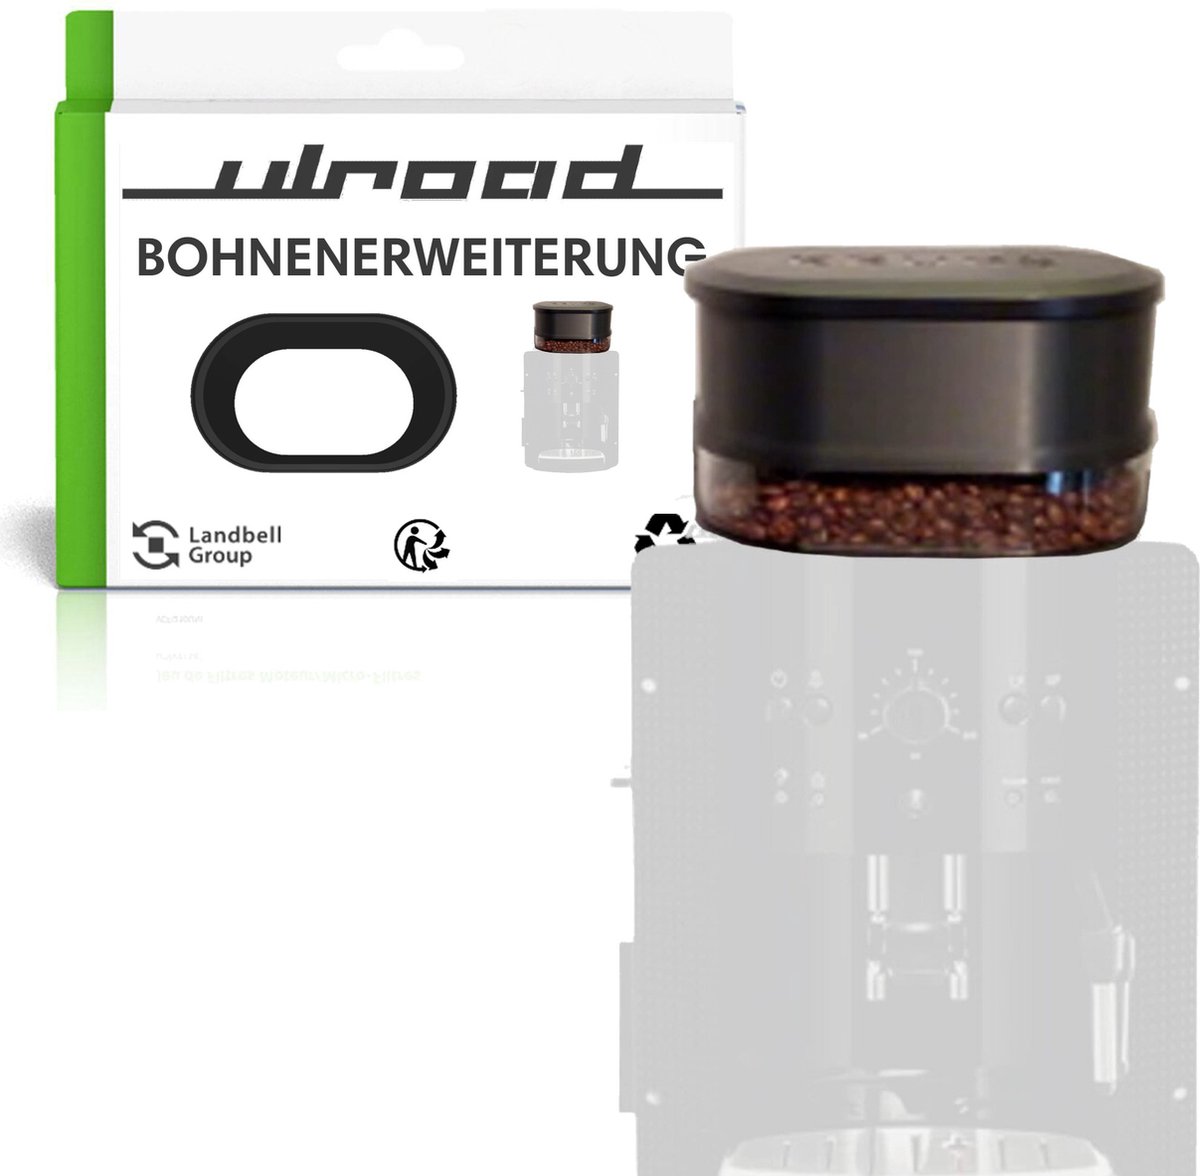 ULROAD reserveonderdelen deksel uitbreiding bonenhouder, geschikt voor Krups EA8160 volautomatische espressomachine, koffiezetapparaat, bonenuitbreiding, accessoires